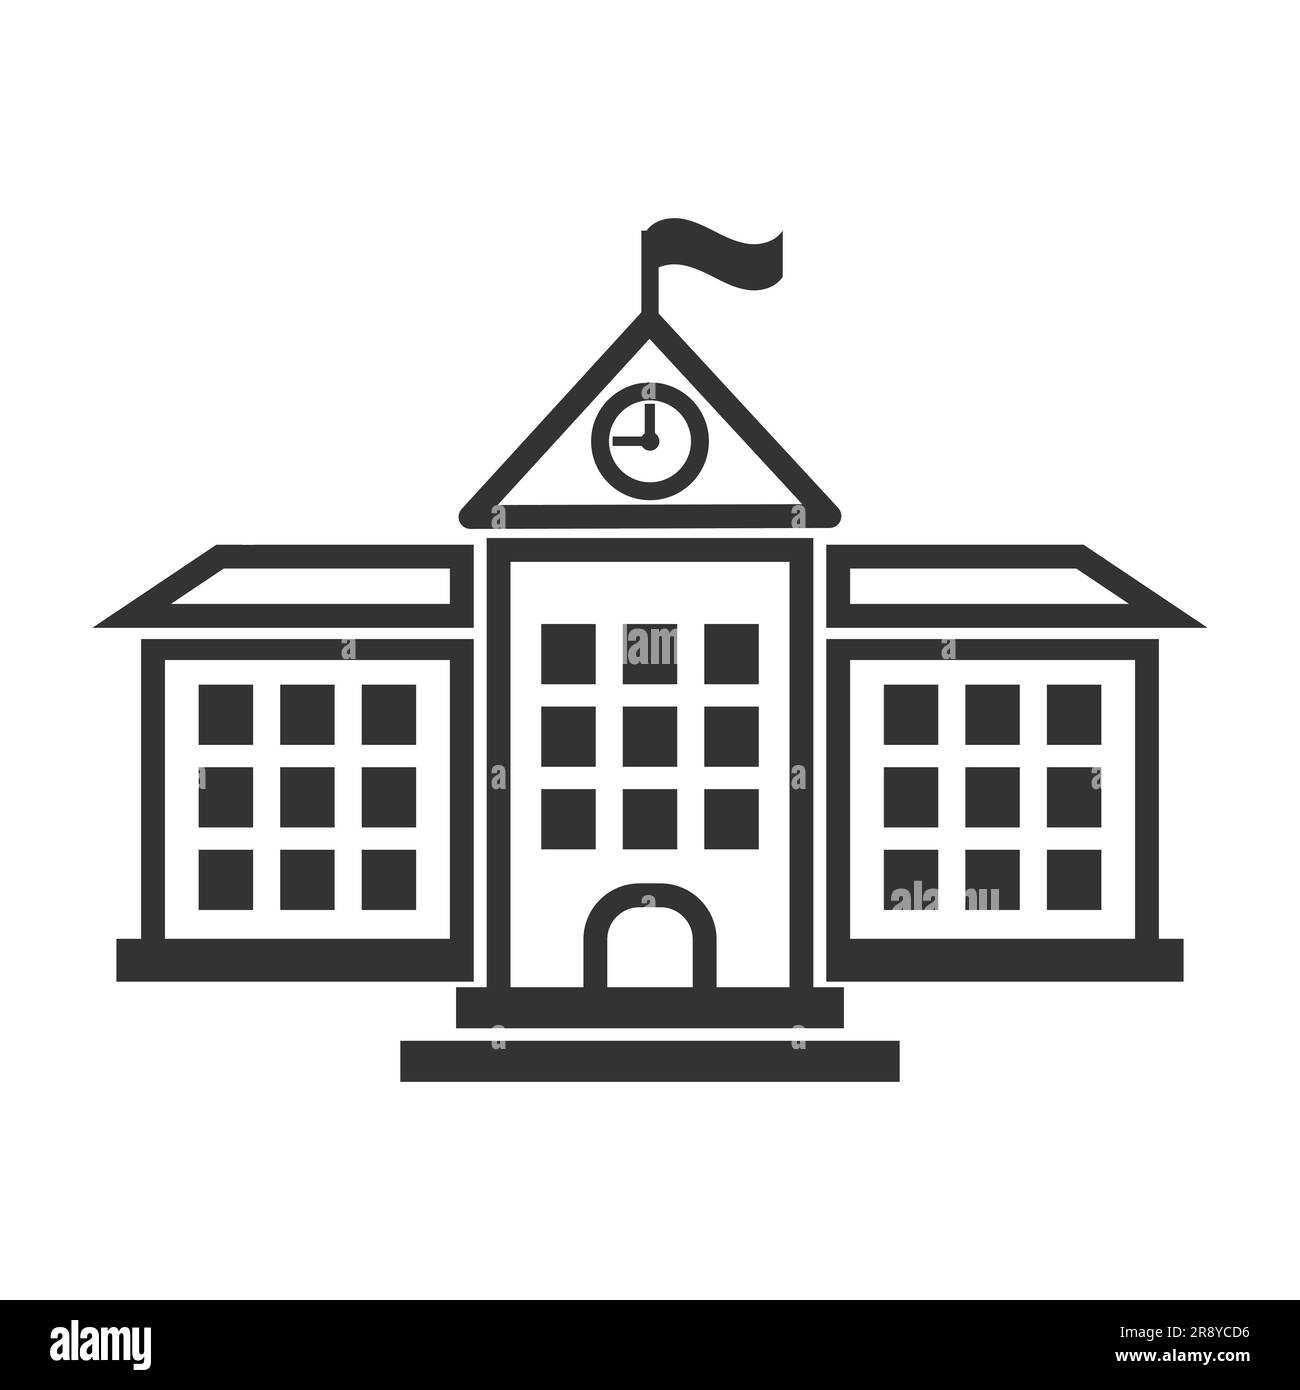 School building icon. Vector illustration Stock Vector